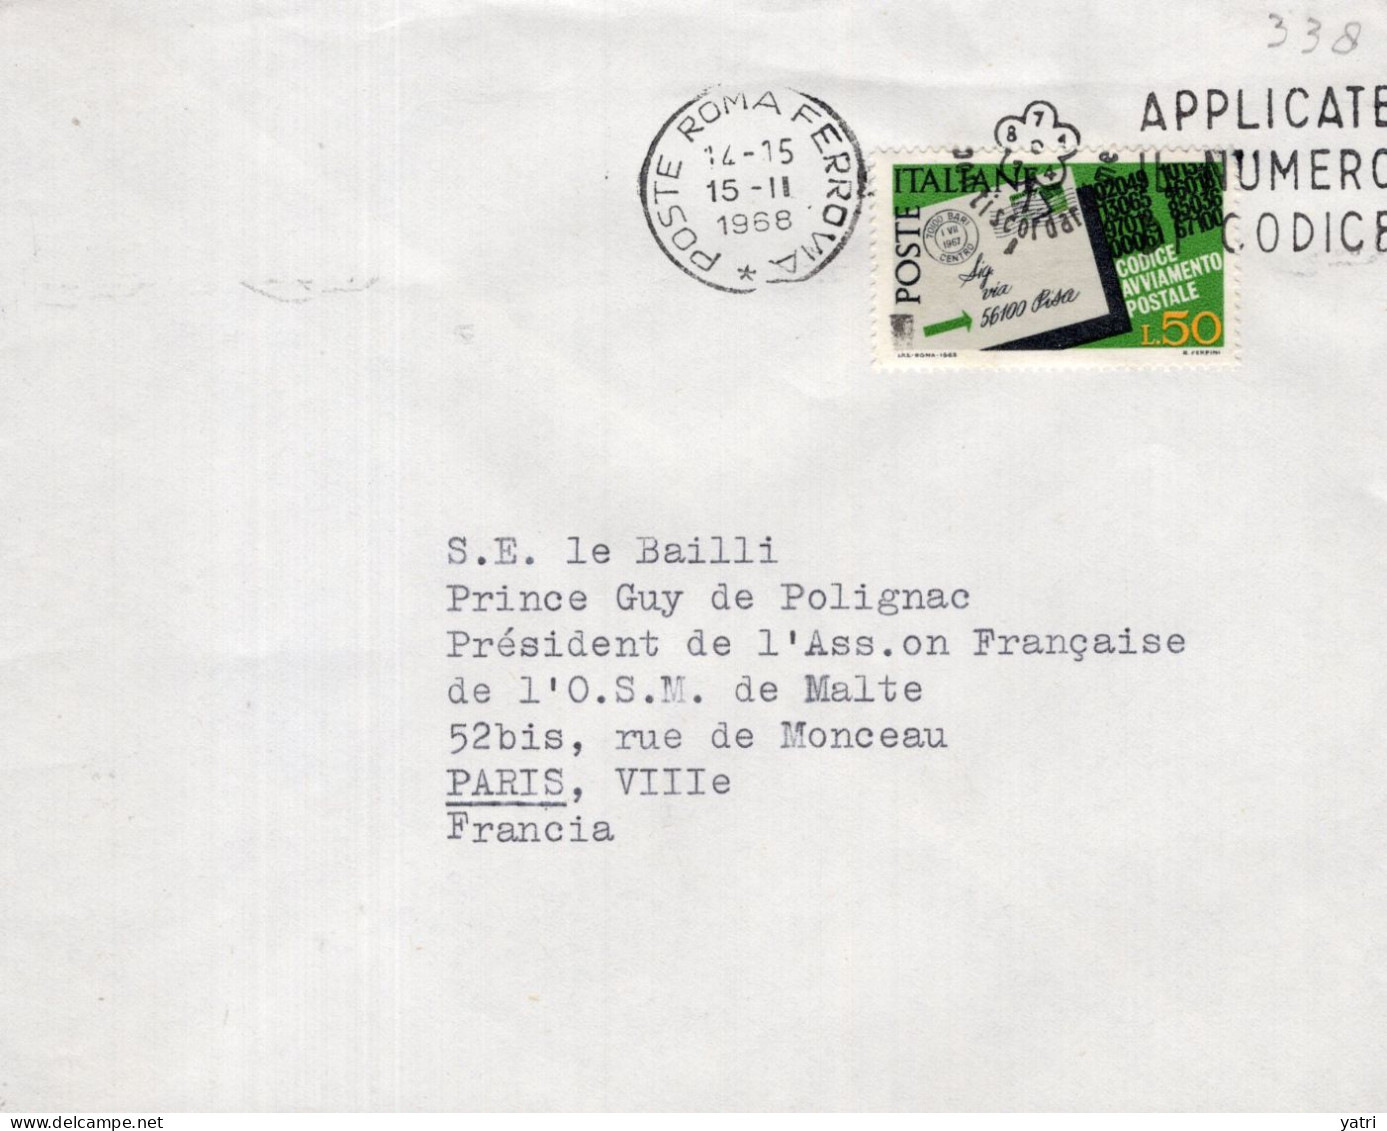 Italia (1968) - 50 Lire "Codice Avviamento Postale" Su Busta Per La Francia In Tariffa Ridotta - 1961-70: Marcofilia